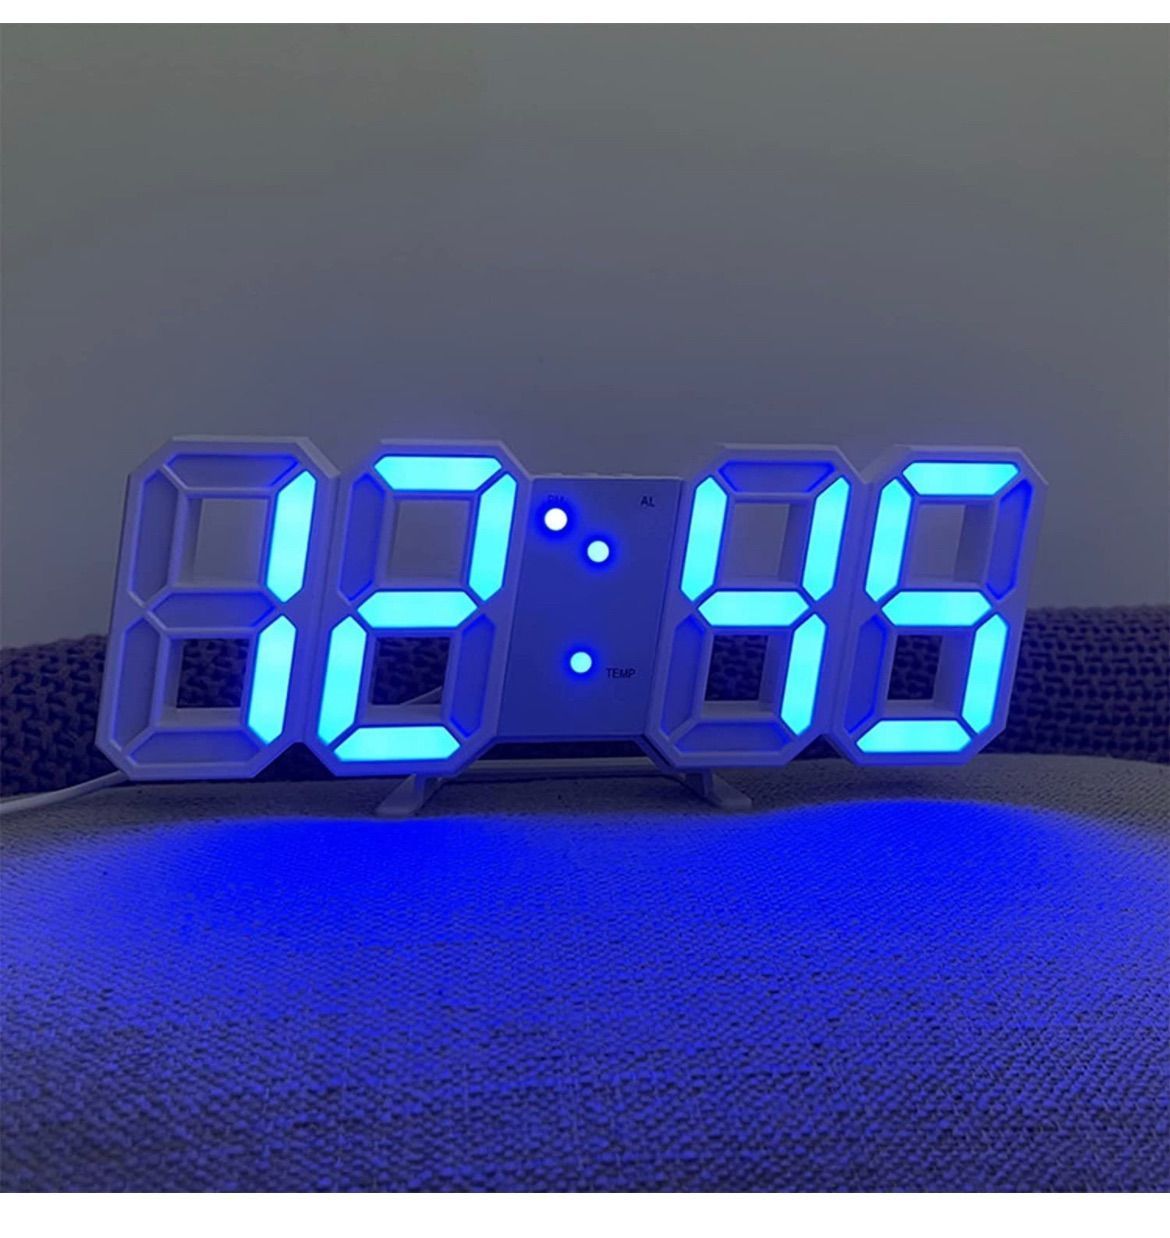 HKING LEDデジタル時計 3Dデザイン アラーム機能付き ...